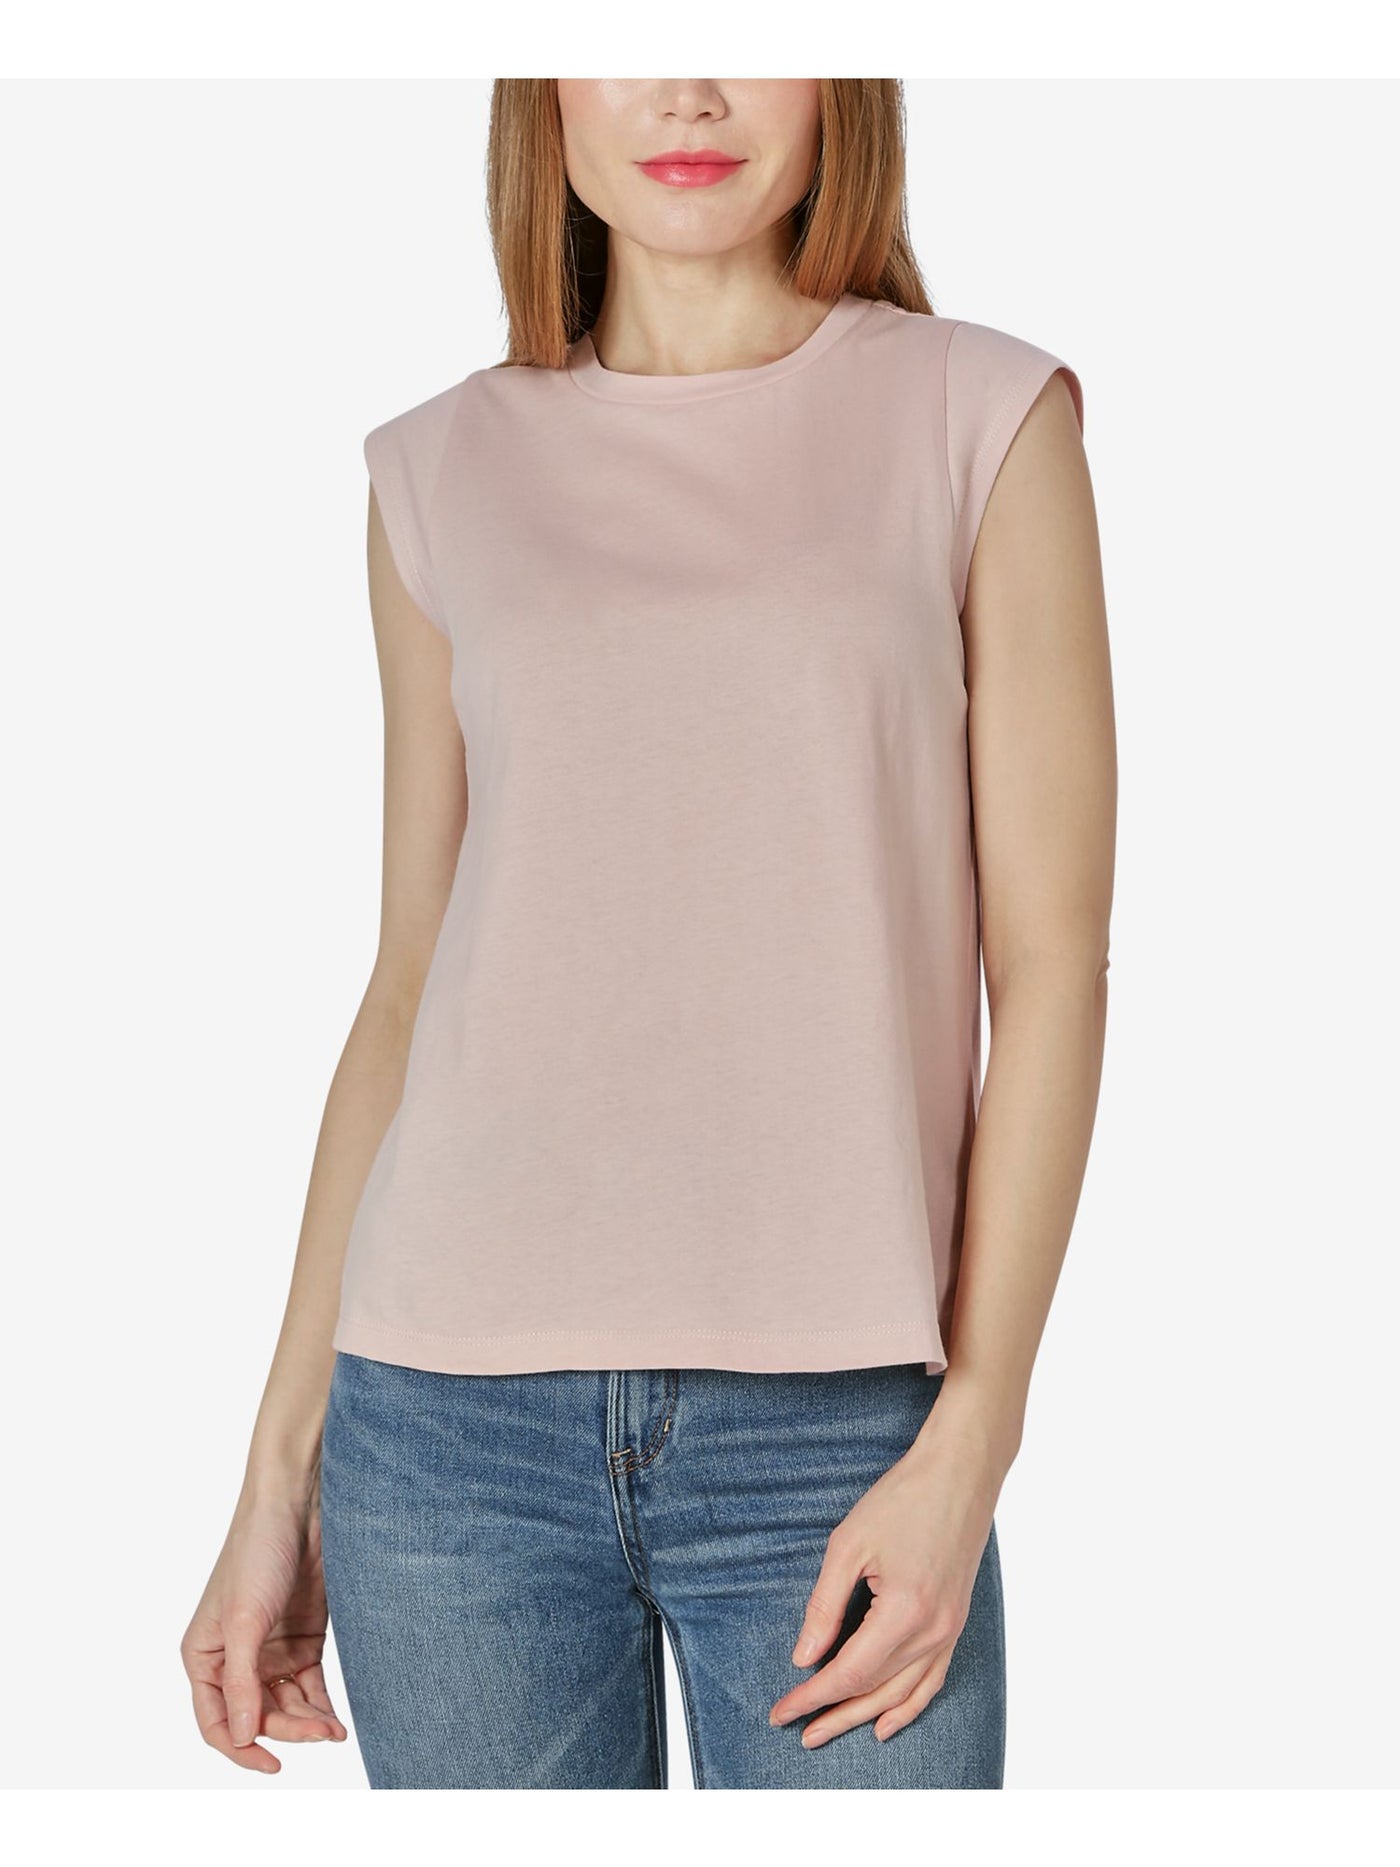 ULTRA FLIRT Womens Pink Cap Sleeve T-Shirt Juniors XS